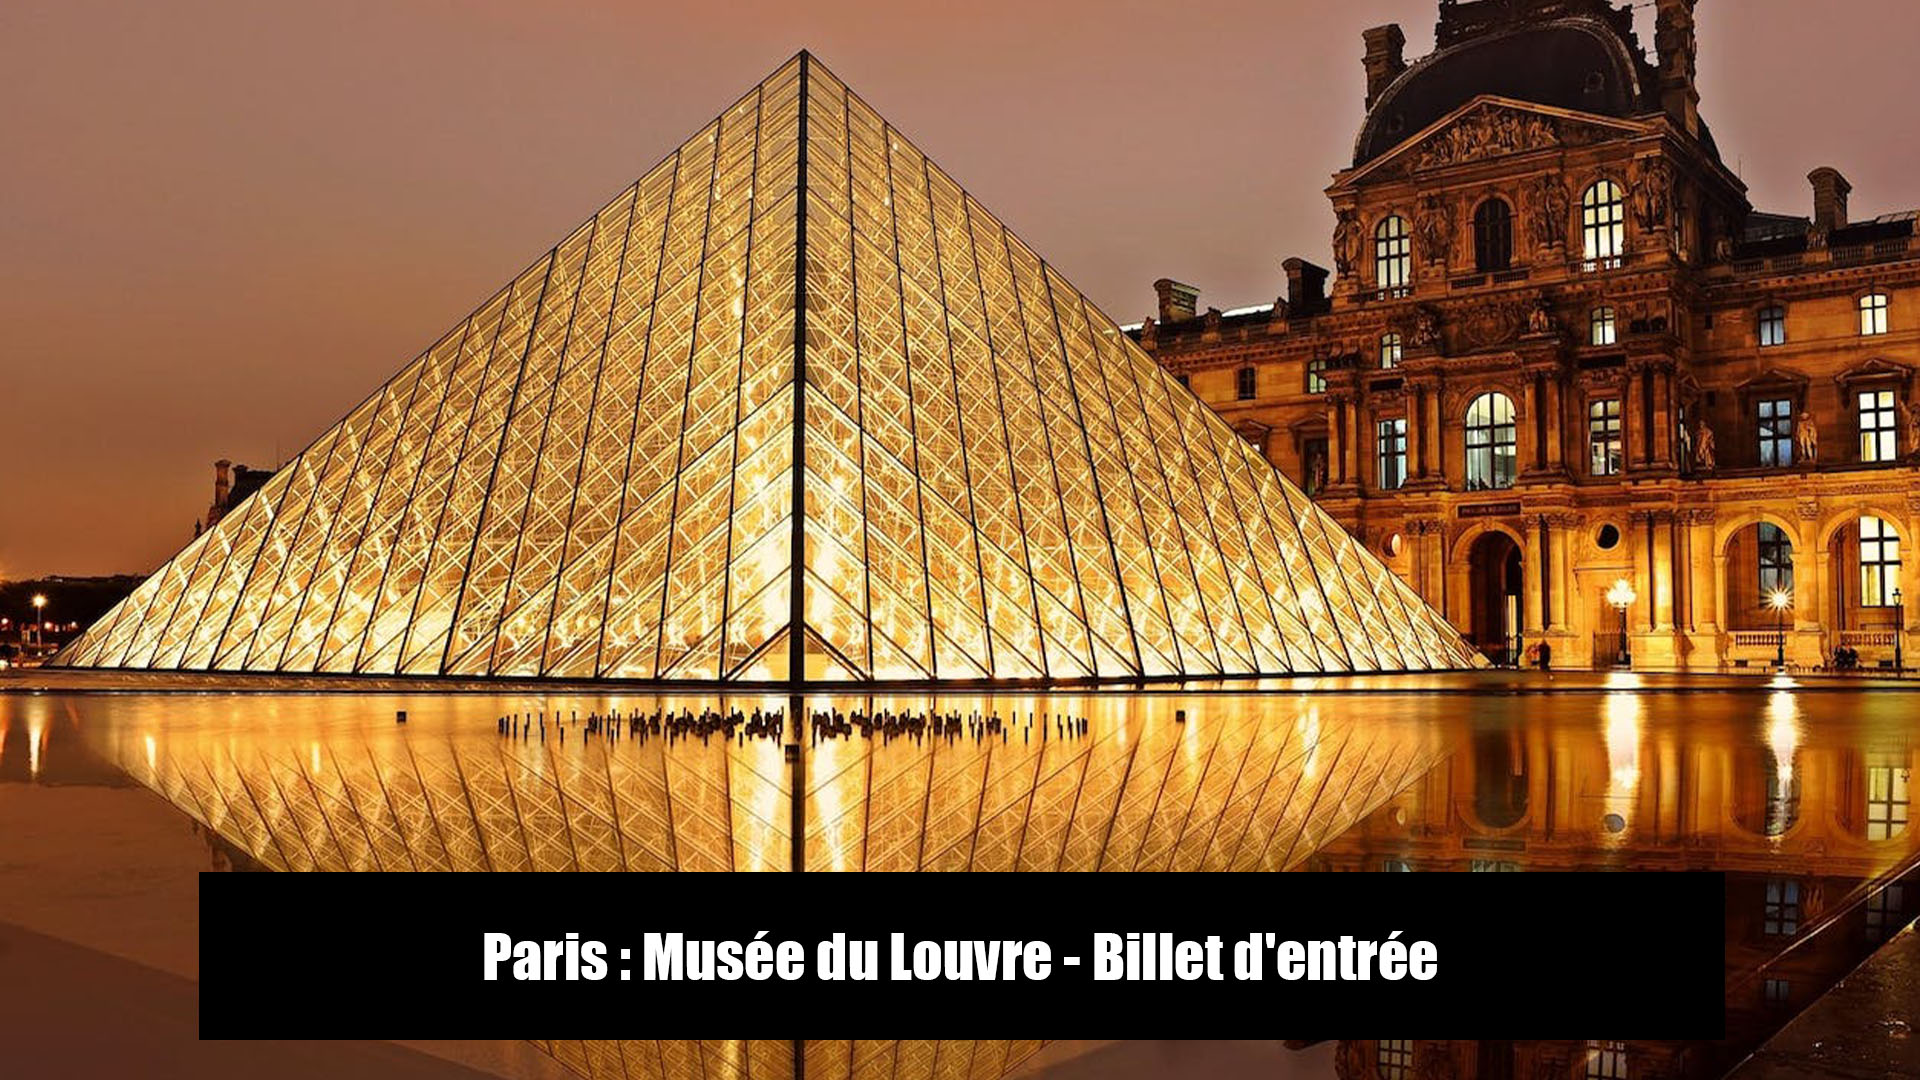 Paris : Musée du Louvre - Billet d'entrée